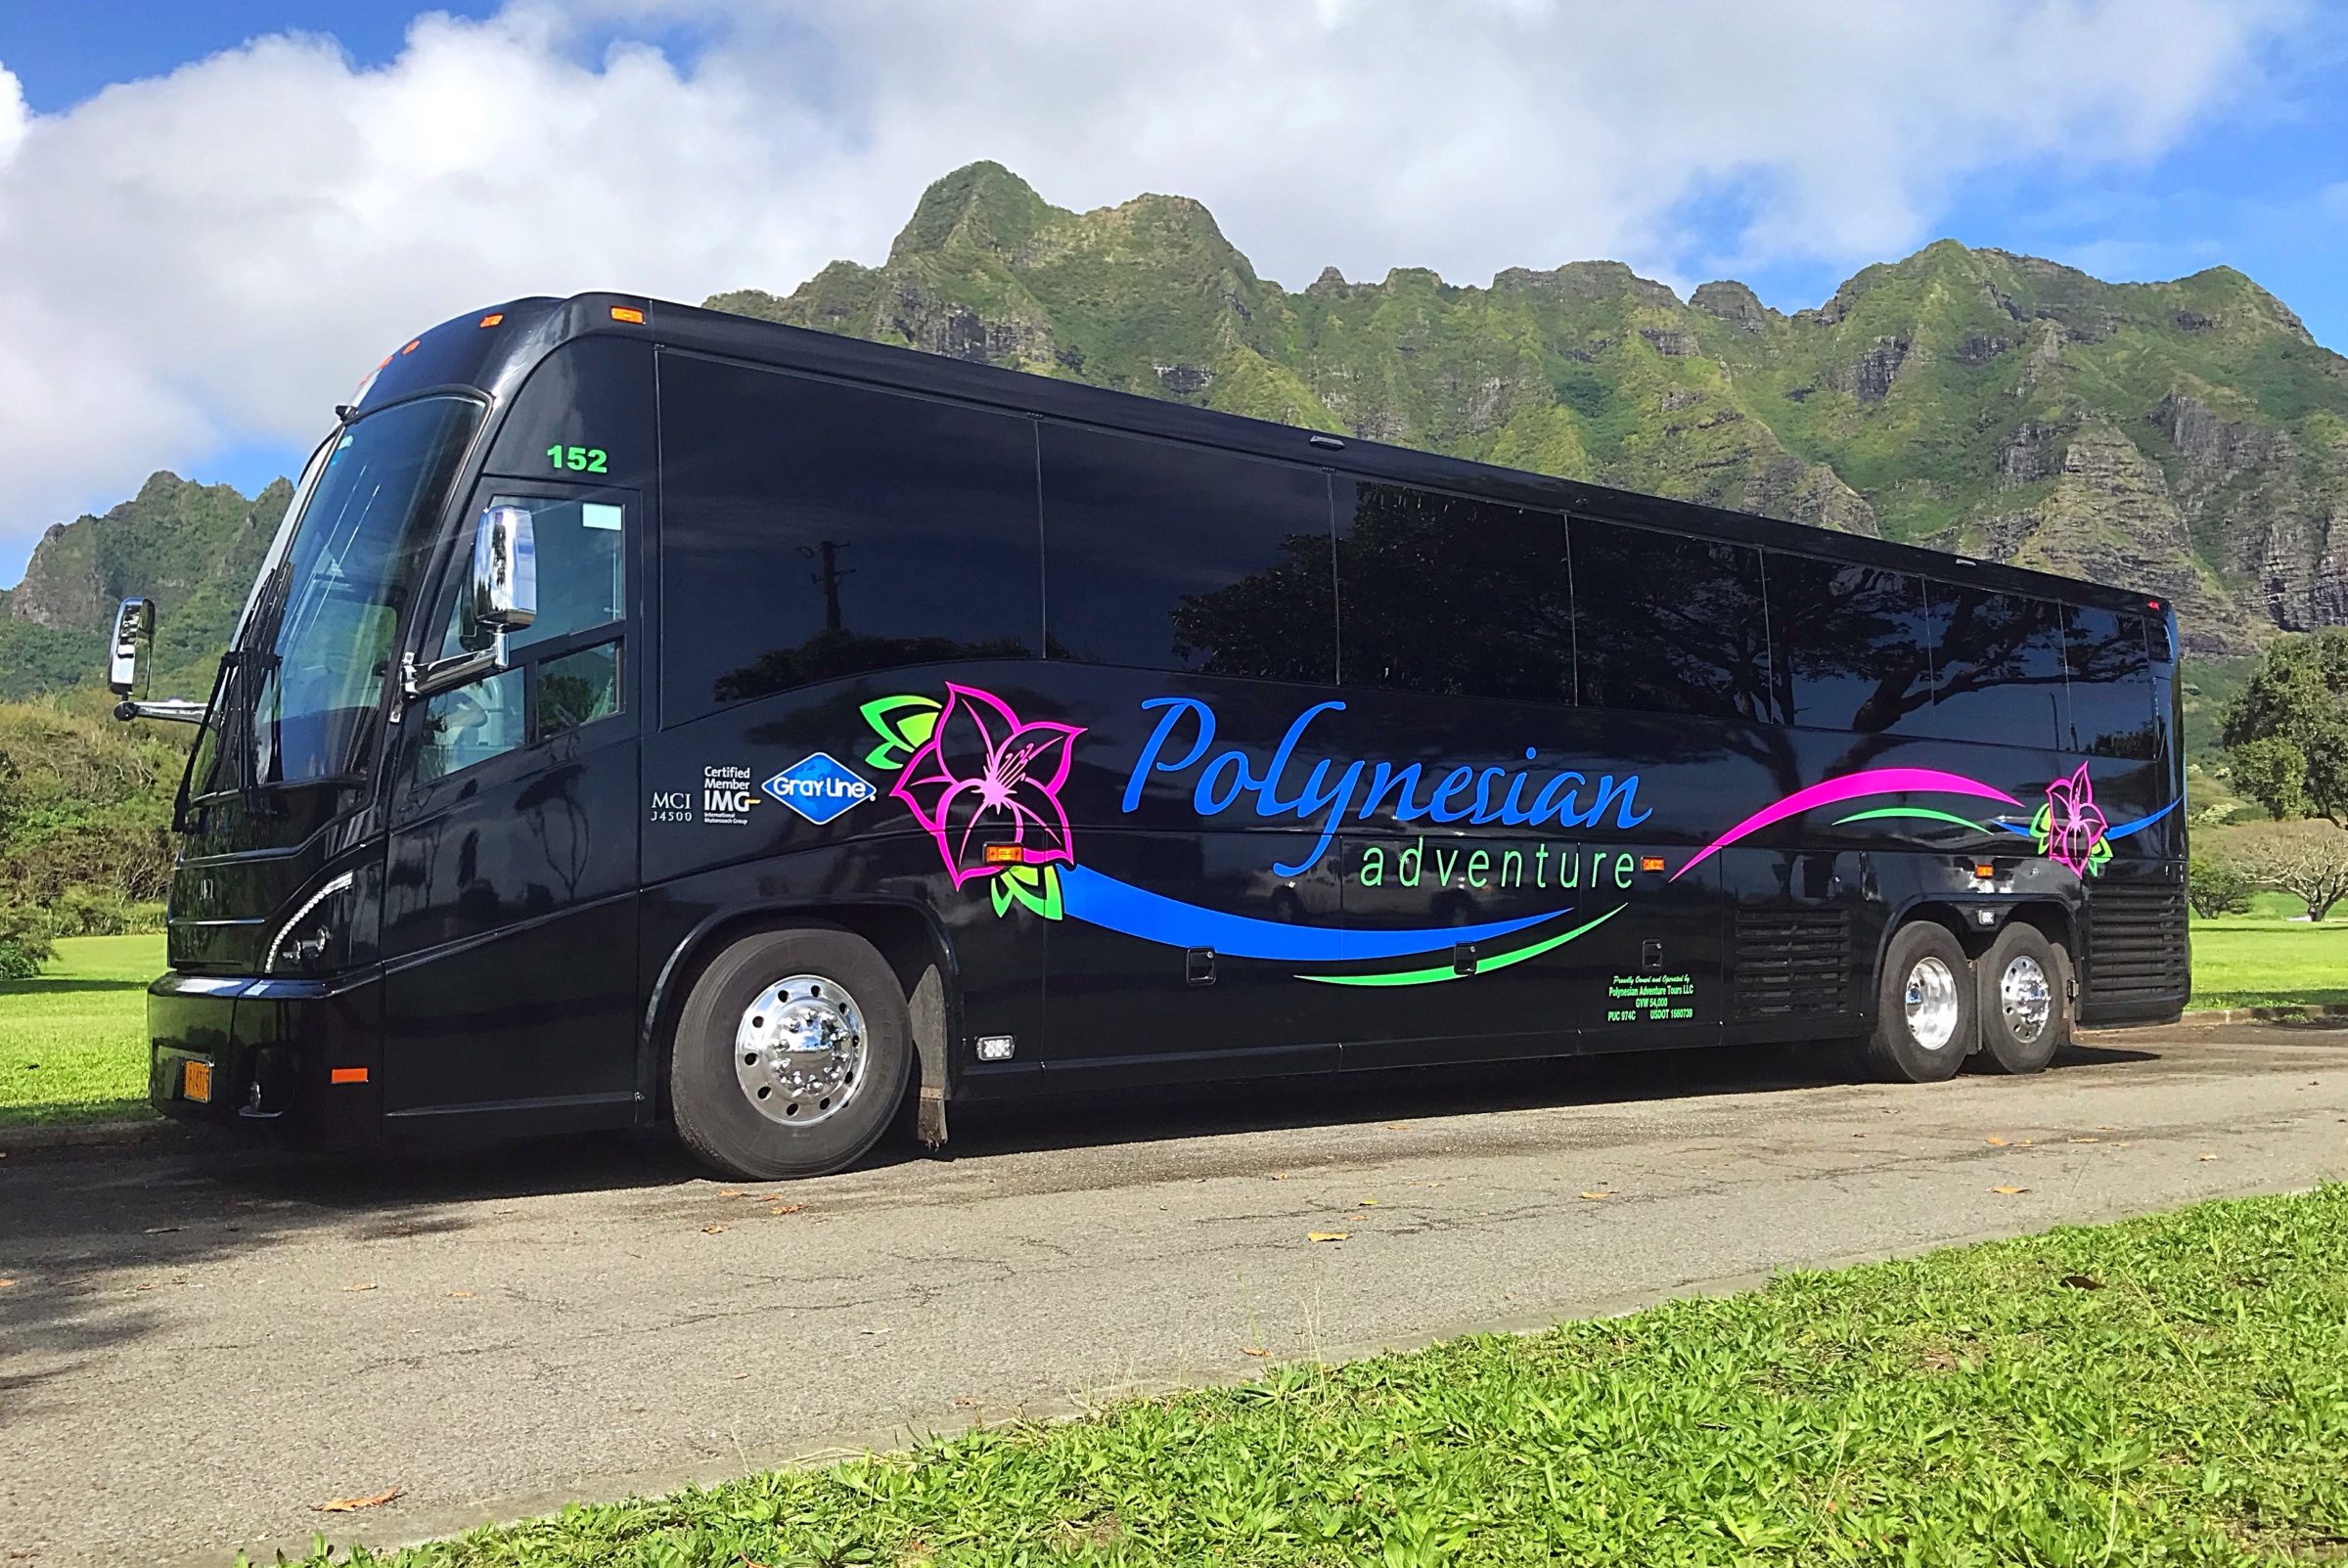 Polynesian Adventure Tours 2880 Kilihau St, Honolulu, HI 96819